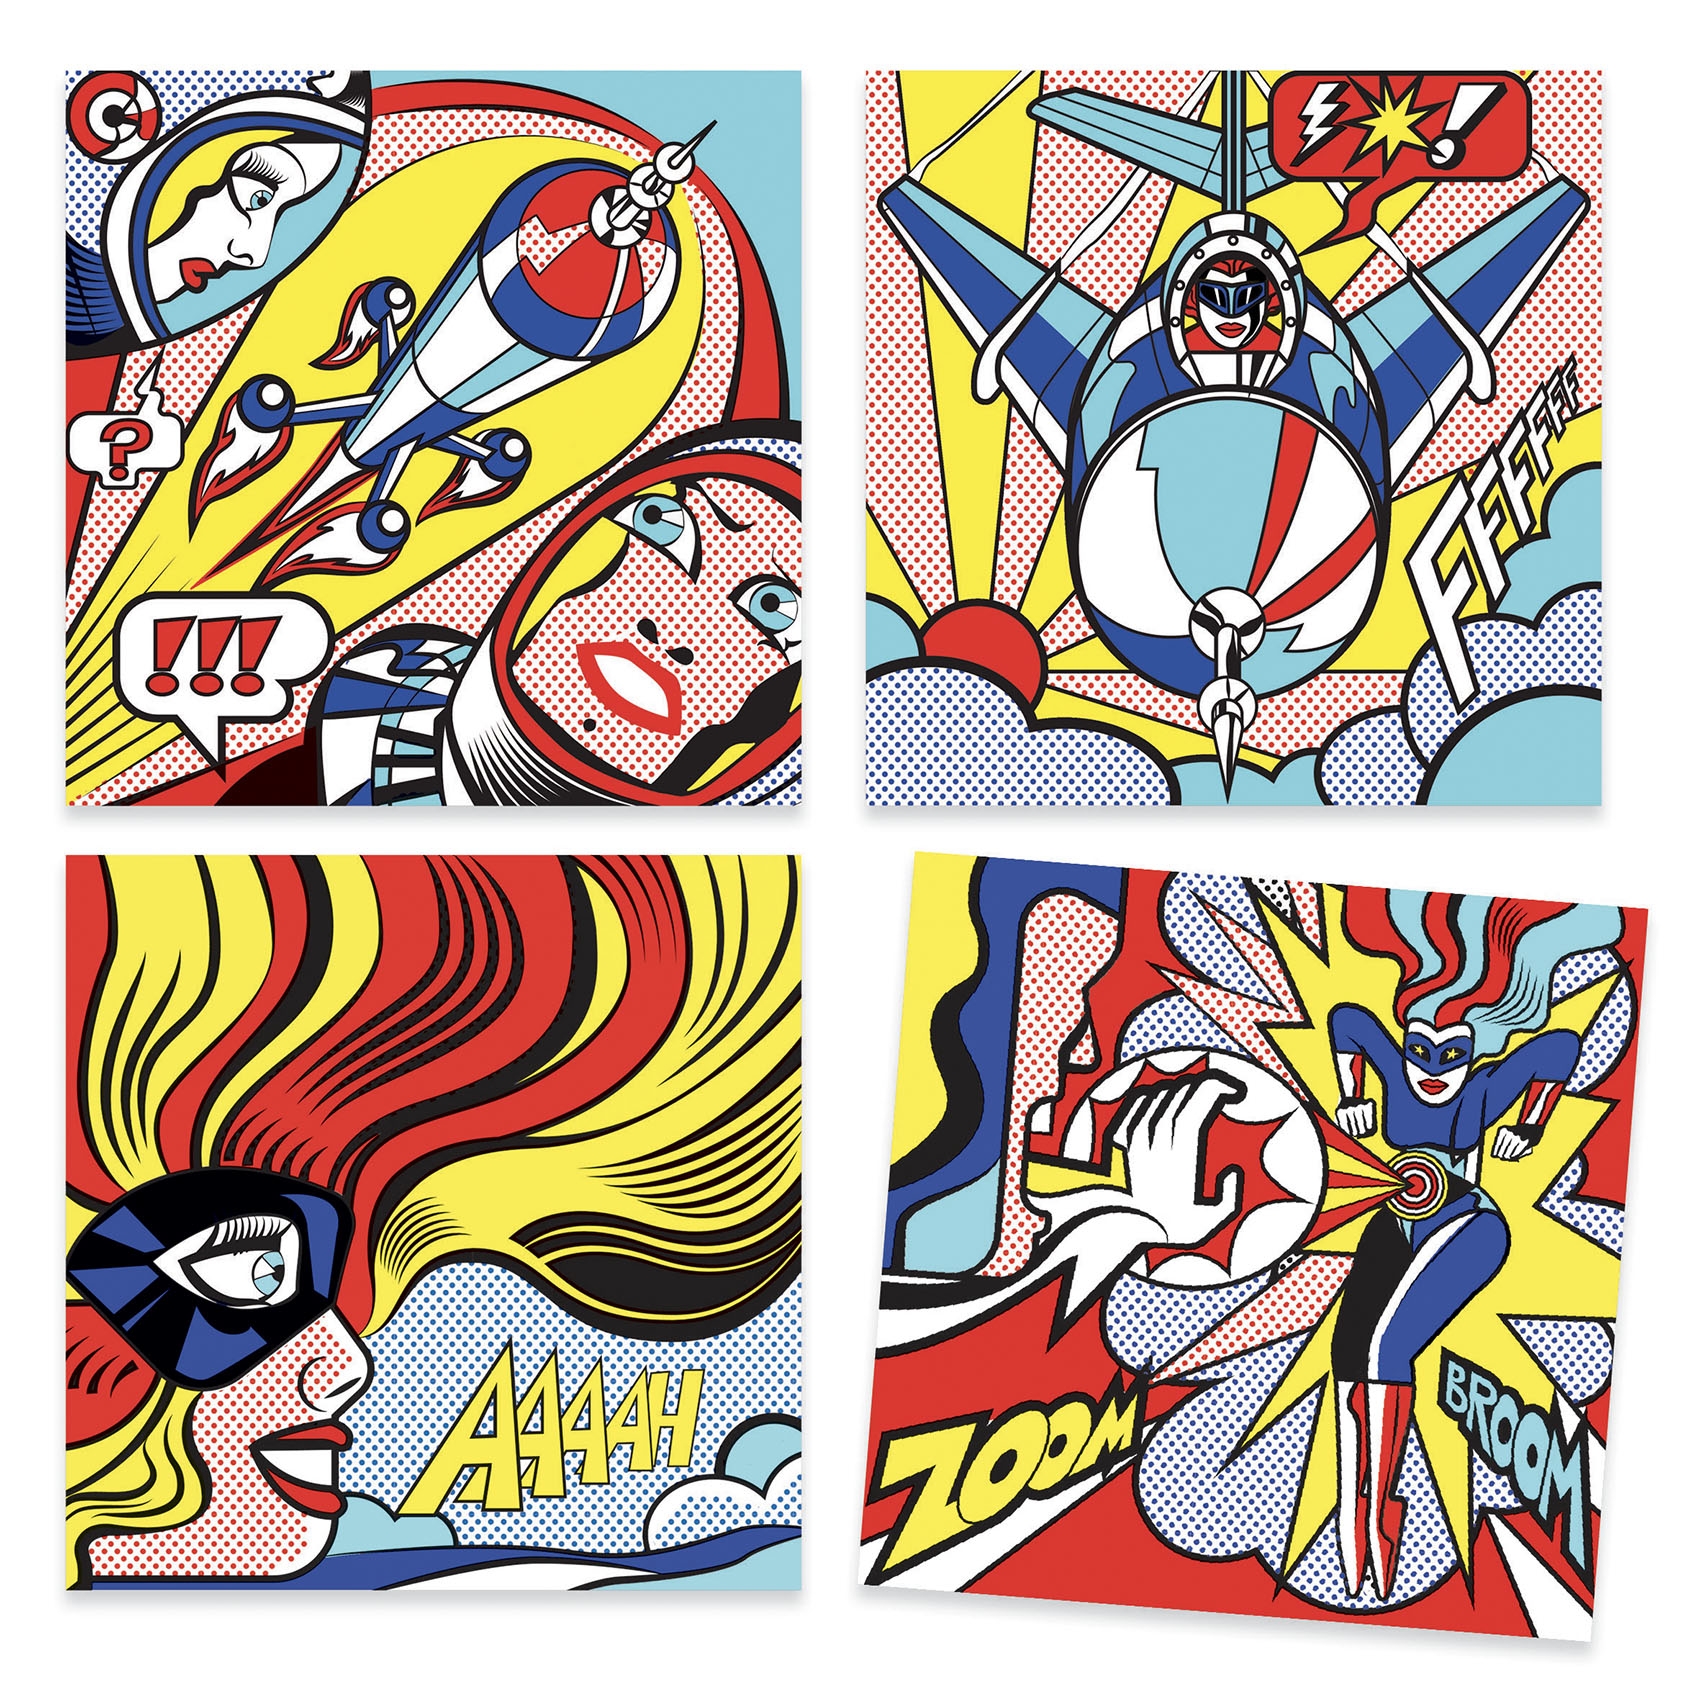 Művészeti műhely - Szuperhősök -  Inspired by Roy Lichtenstein - Superheroes - 1